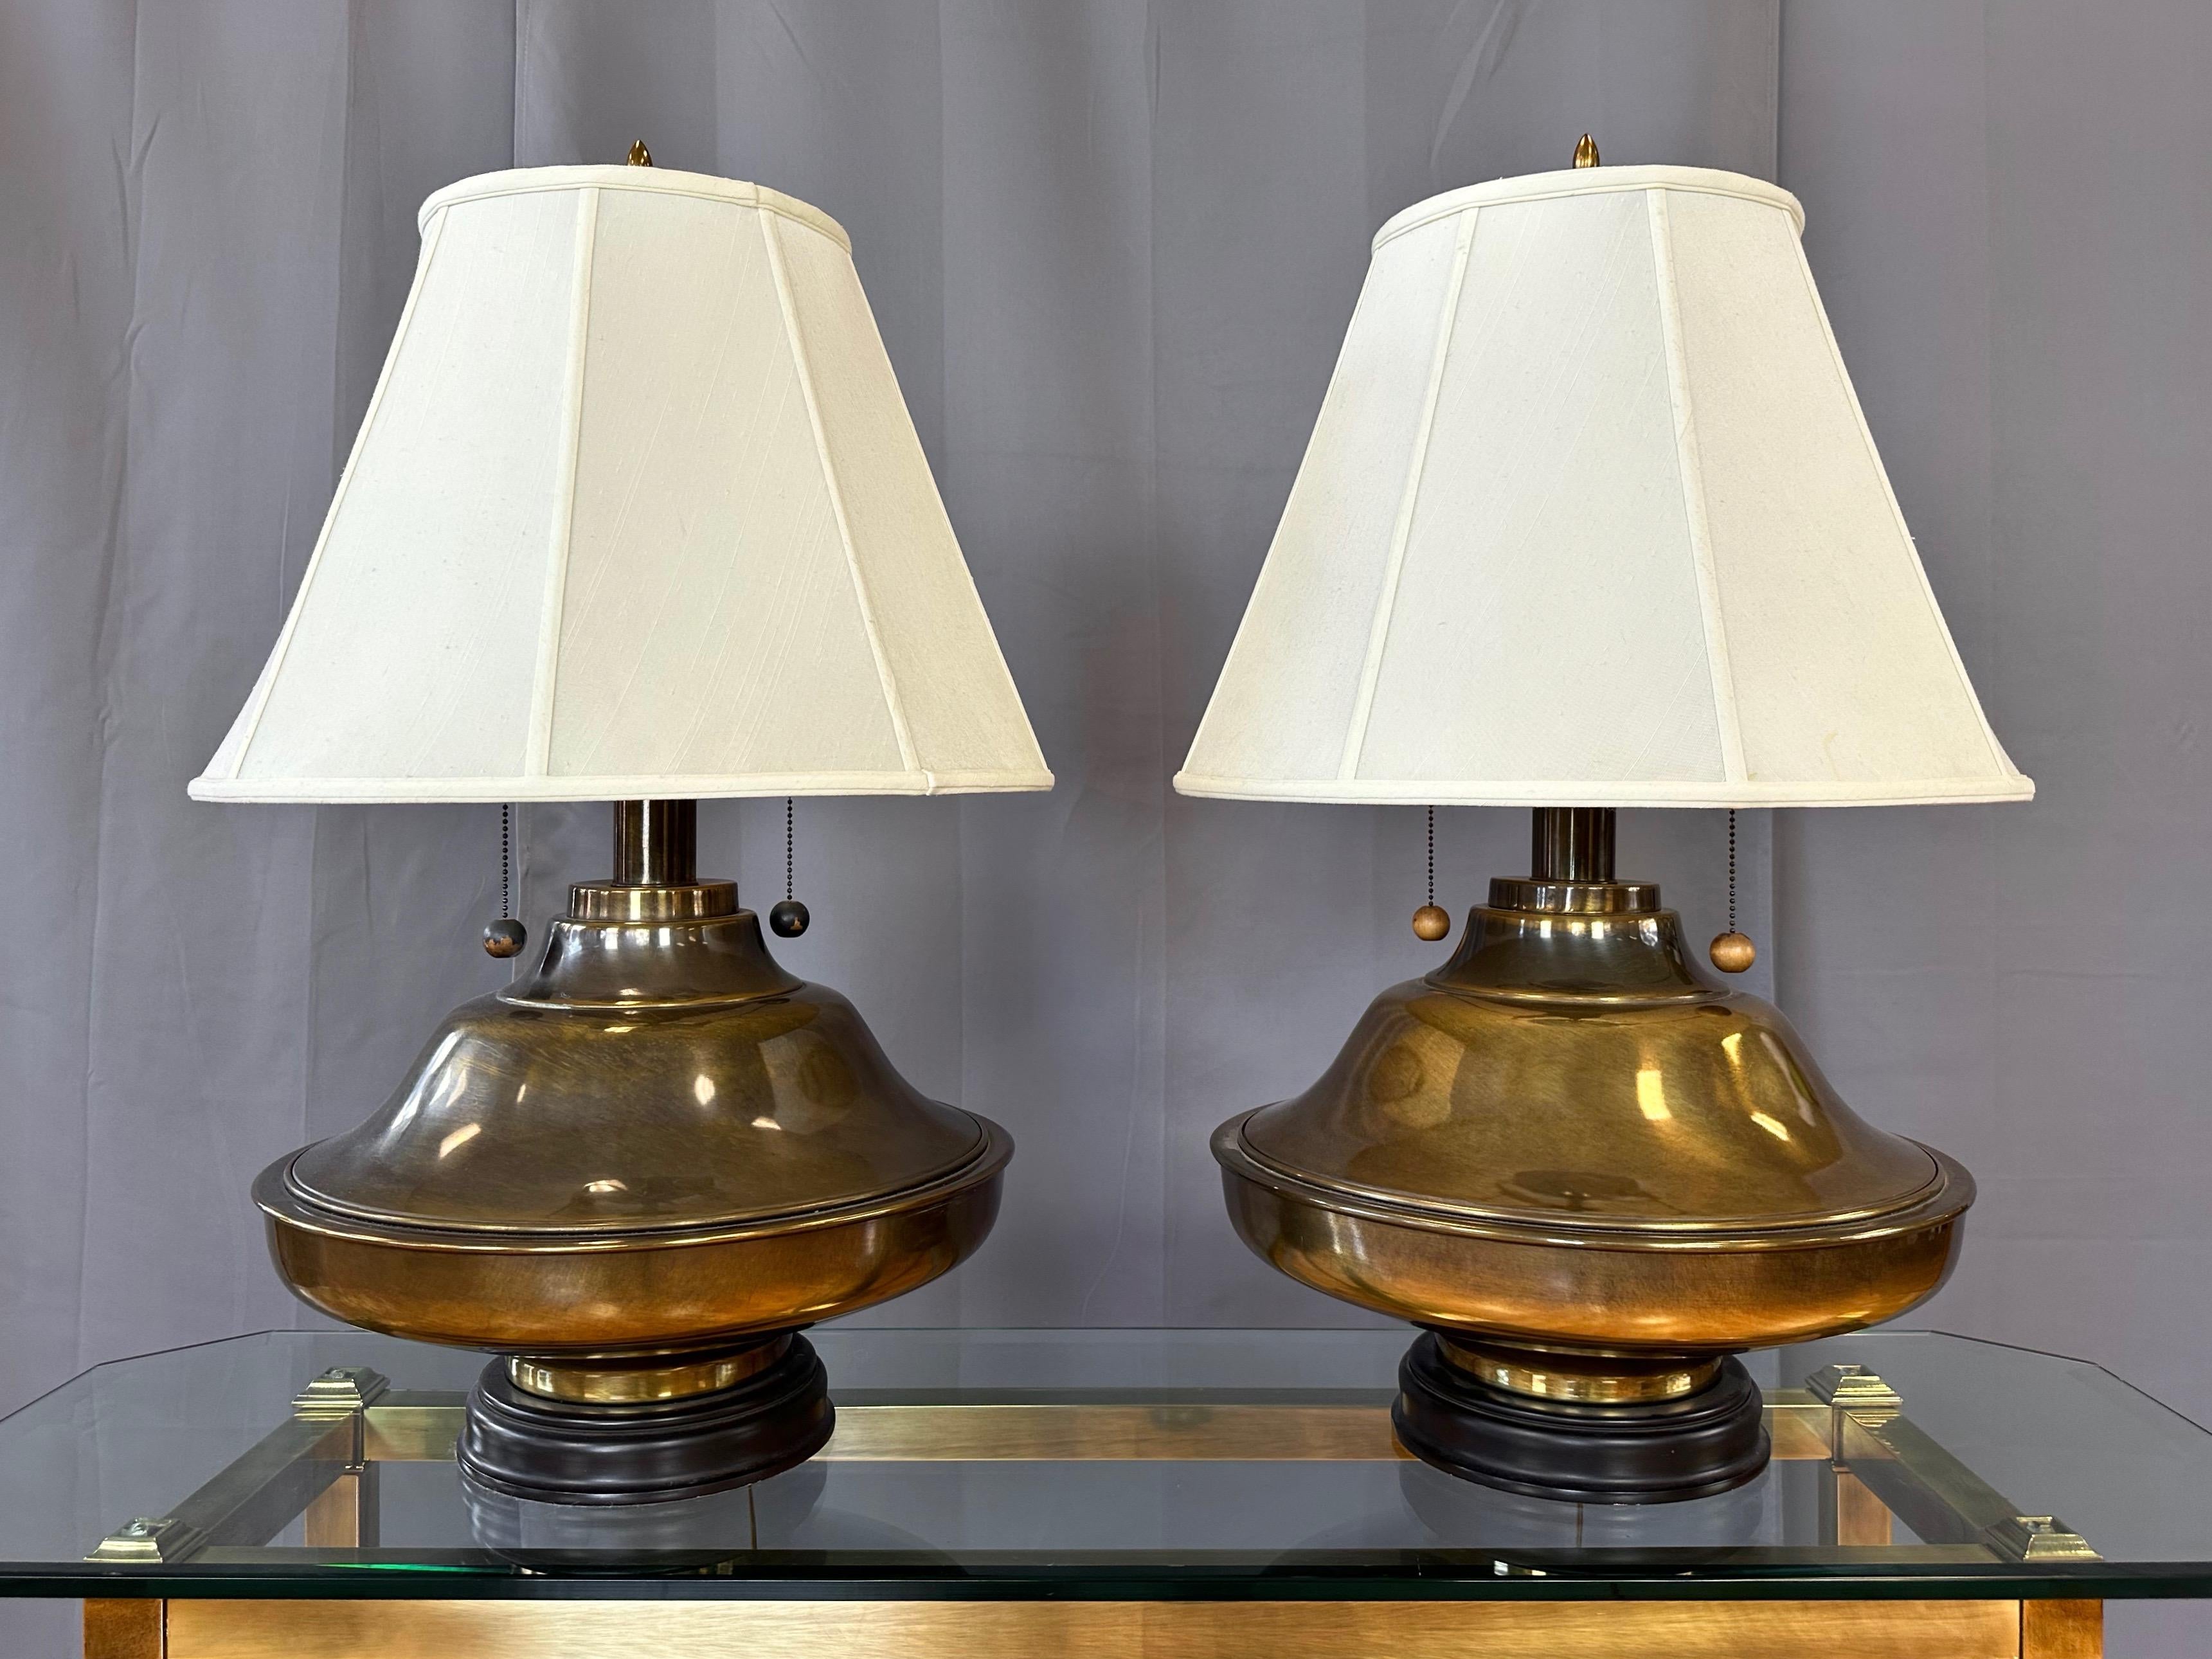 Un par de monumentales lámparas de sobremesa de latón envejecido estilo Hollywood Regency de la década de 1960 con pantallas de seda.

Los cuerpos redondos de latón, muy sustanciosos y visualmente llamativos, presentan una forma poco común que no se